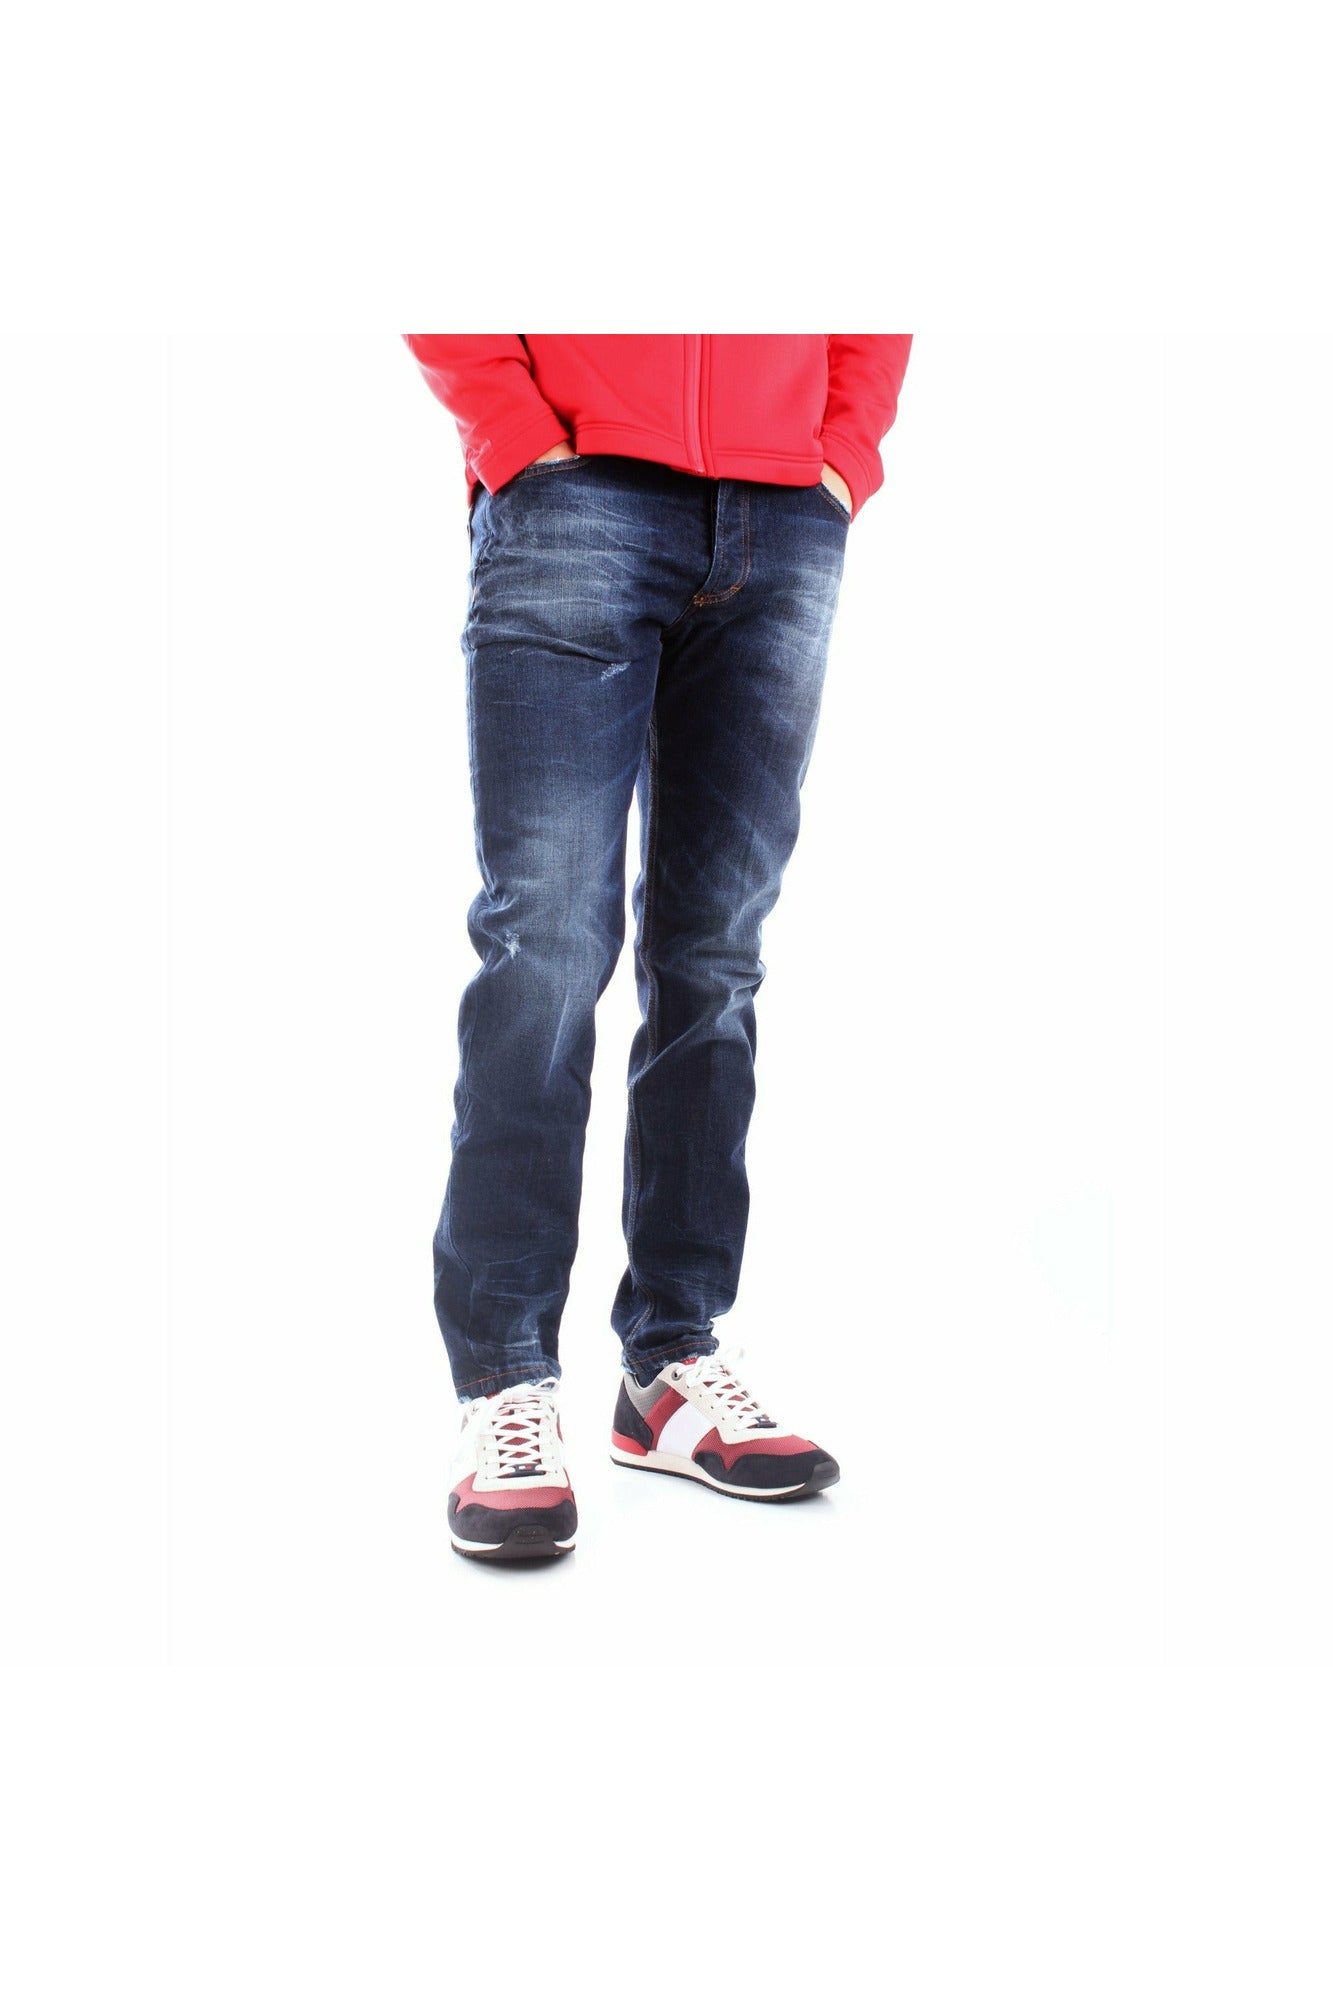 Daboleis DB-006 jeans in denim di cotone